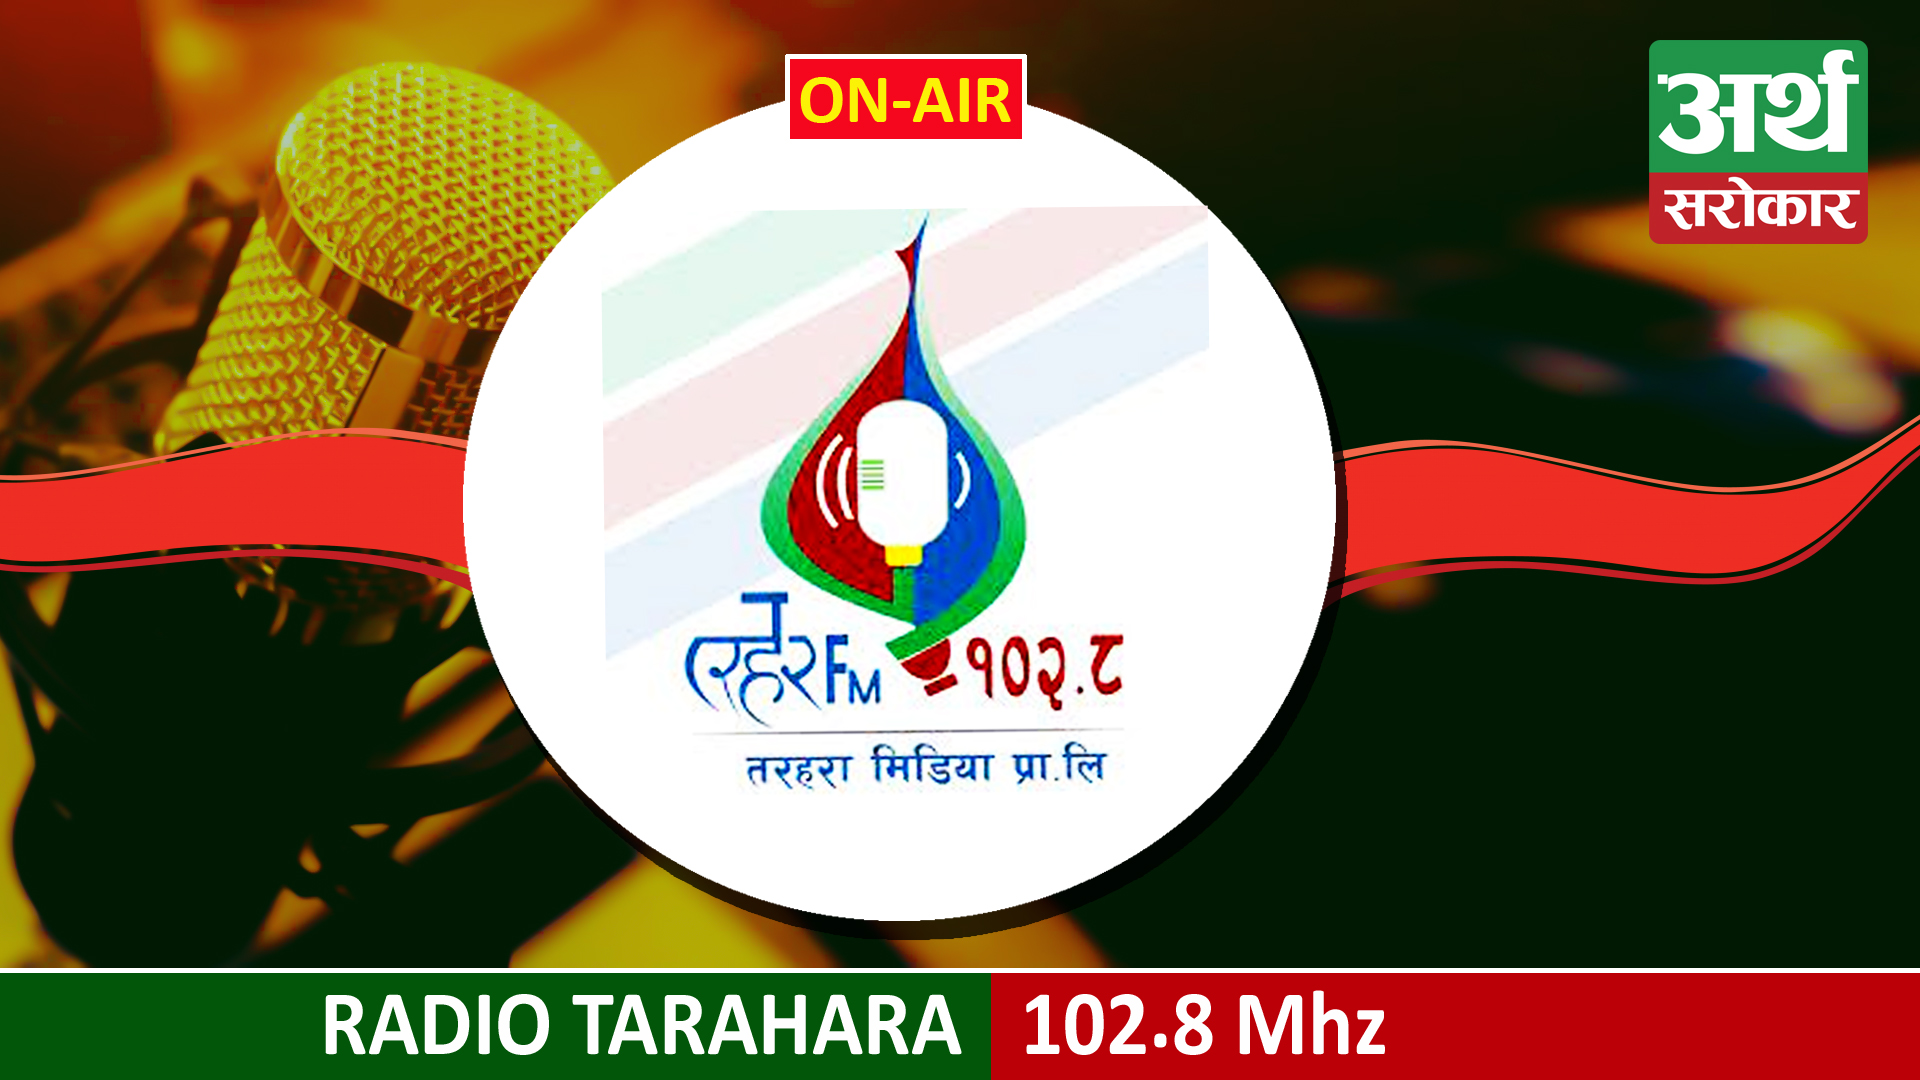 Tarahara FM 102.8 MHz